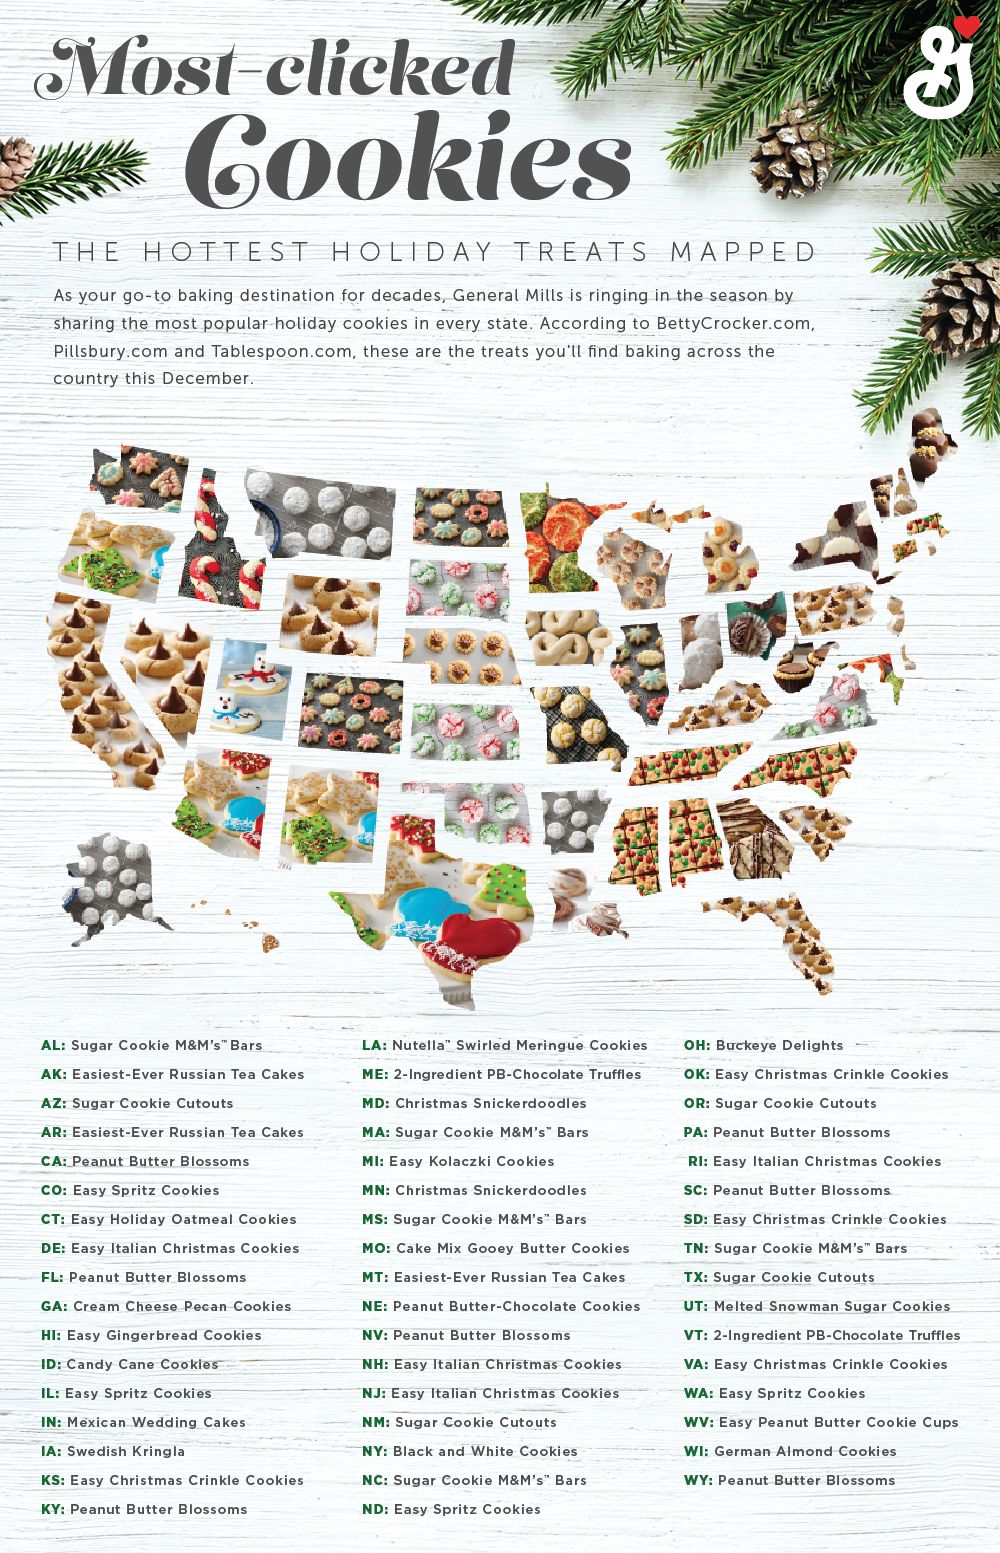 Favorittkaker og mest populære julekaker i Amerika, ifølge General Mills